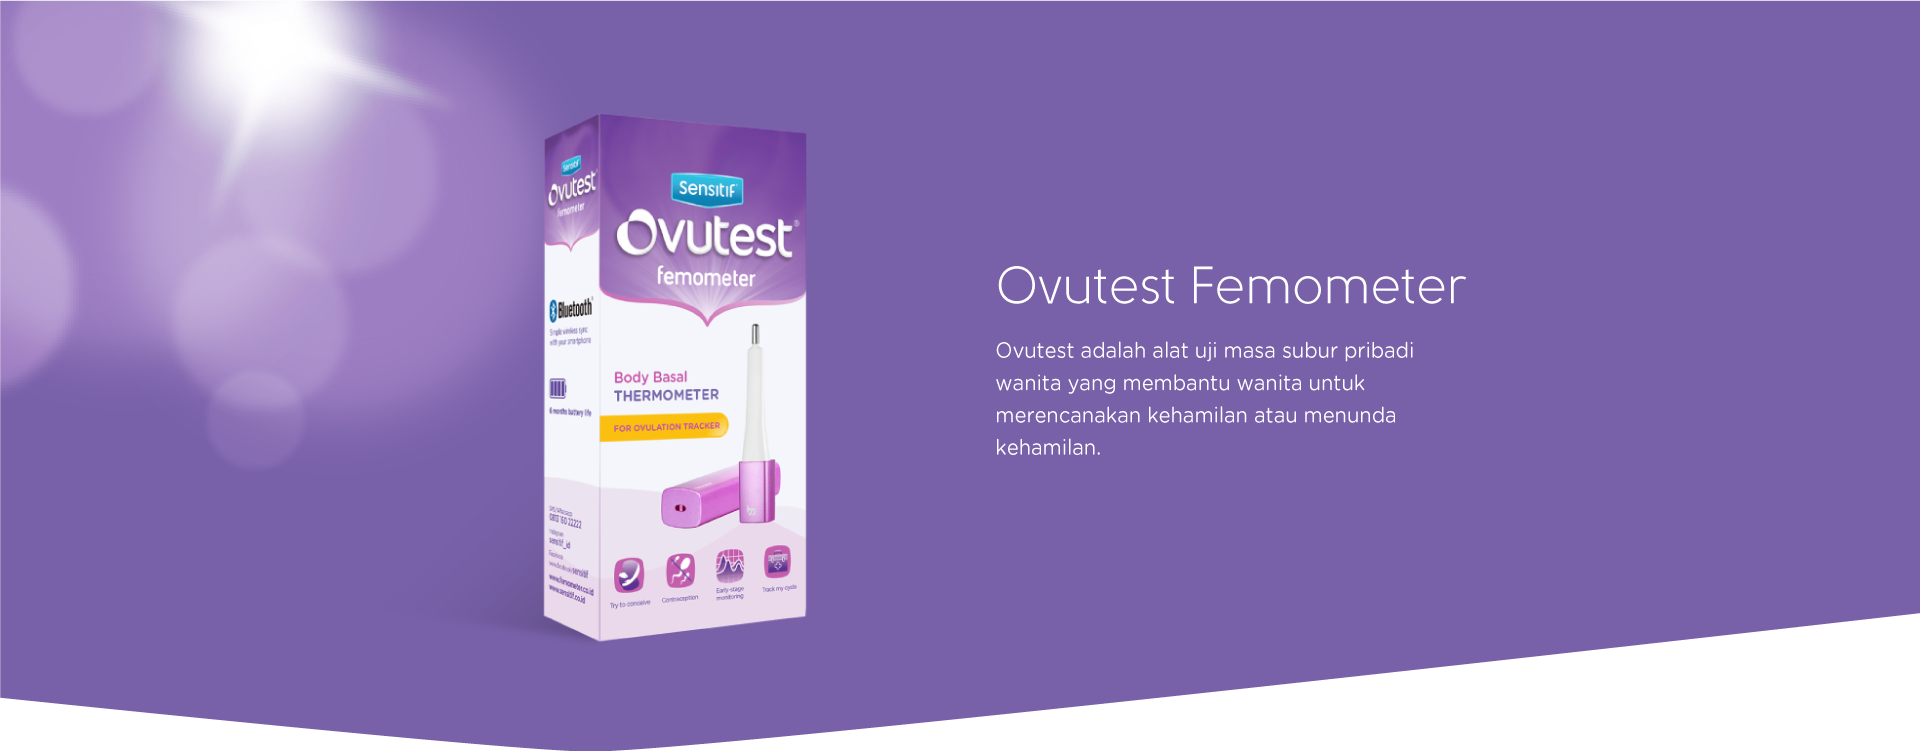 Hasil gambar untuk ovutest femometer